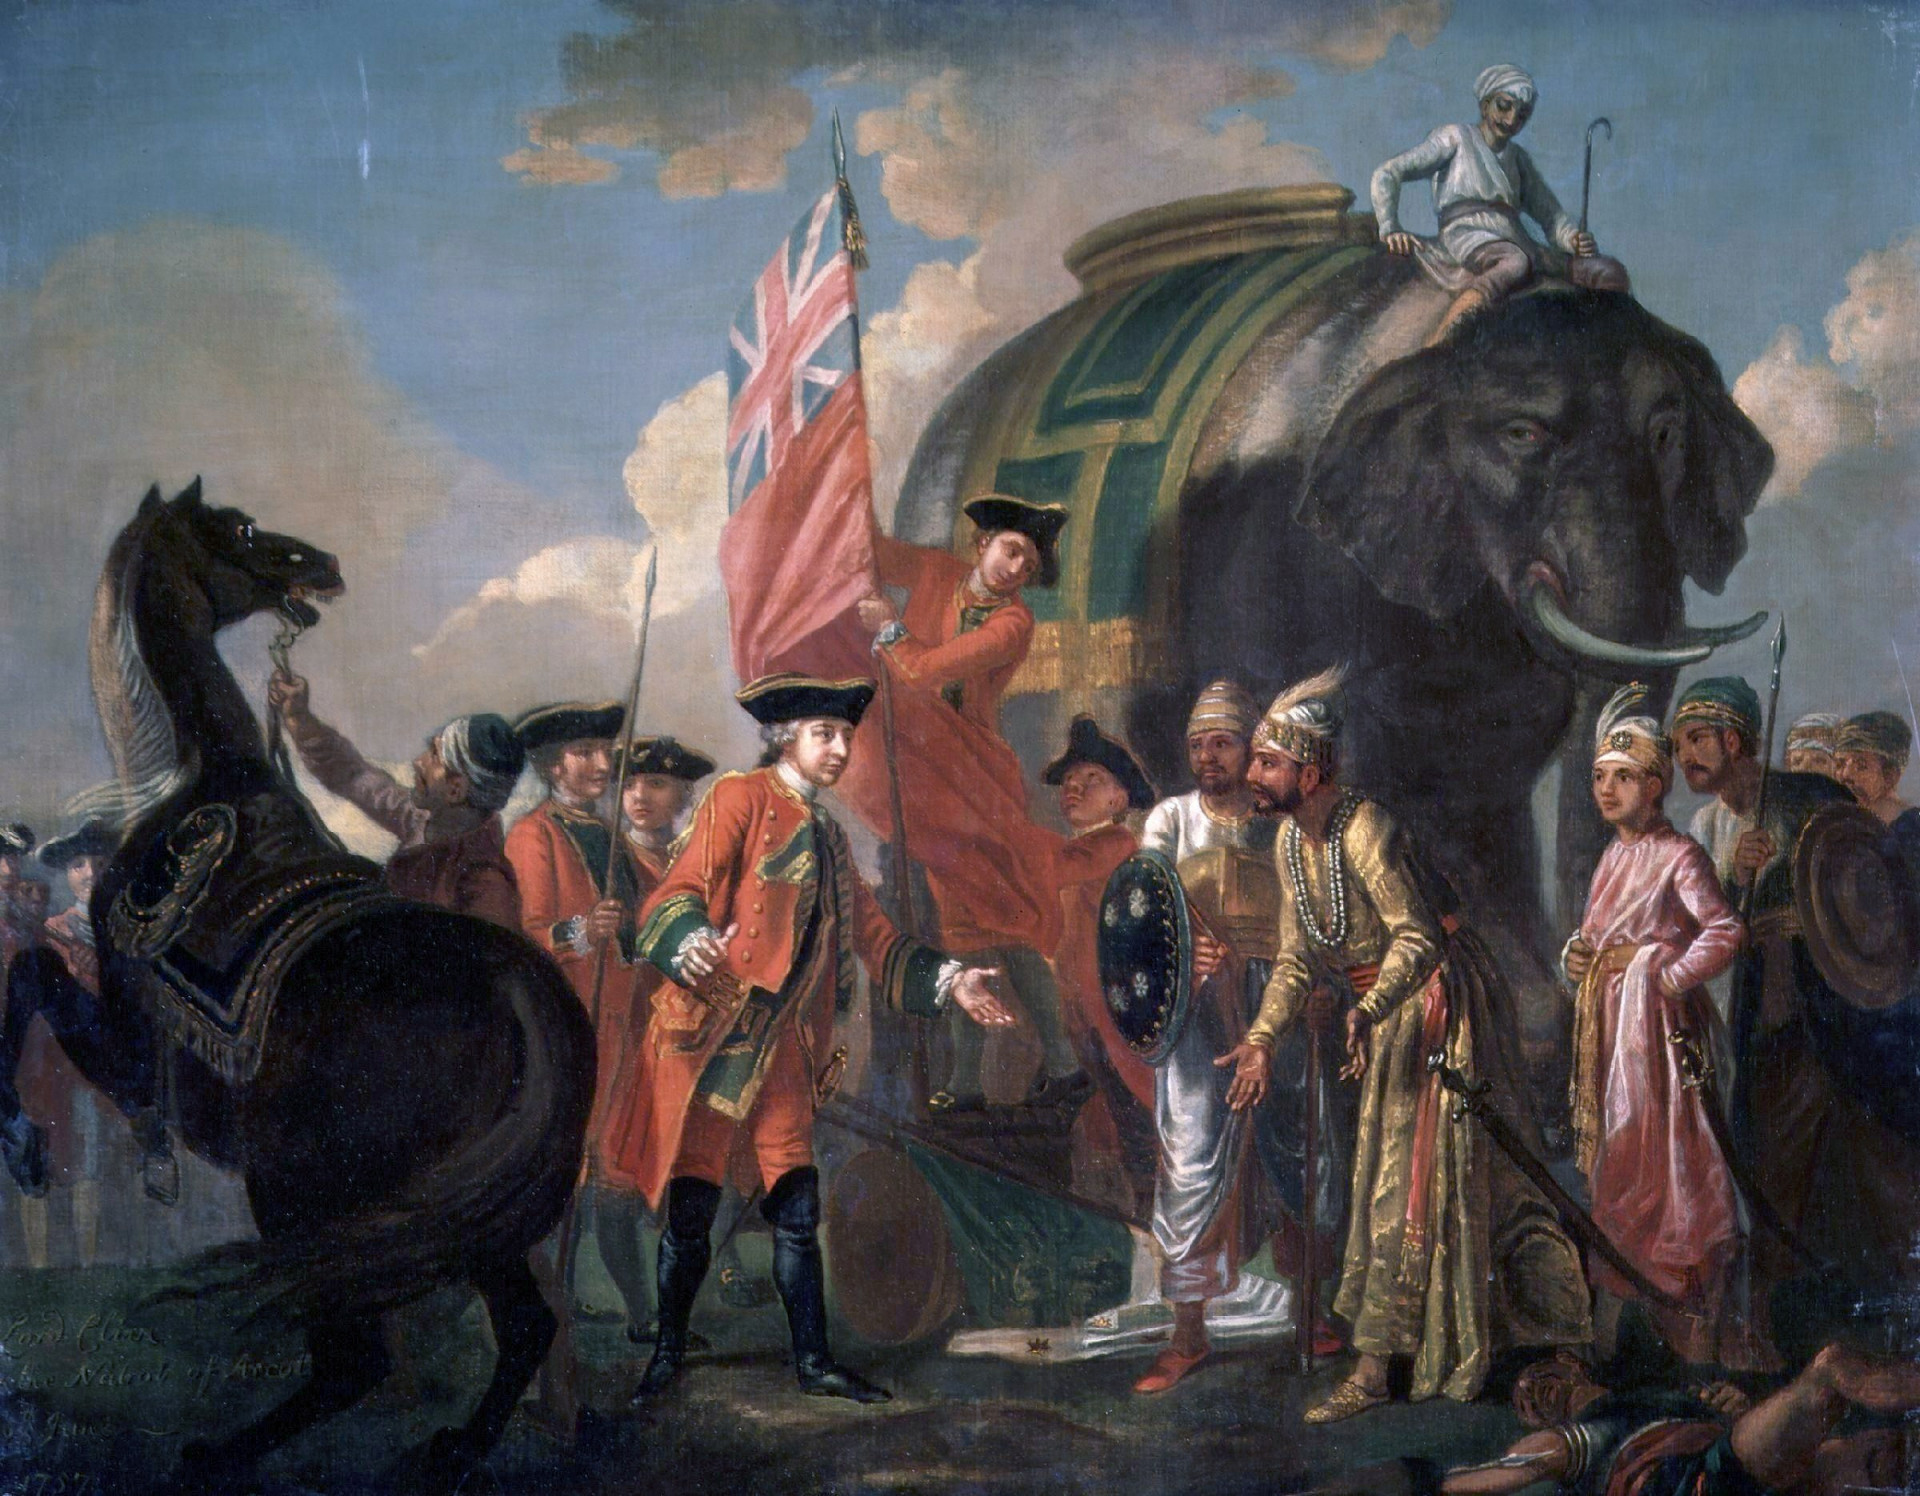 <p>Comandante del ejército de Bengala, la traición de Mir Jafar contra su país se vio motivada por su ciego deseo de reclamar el trono. Guiado por su ambición, se unió a las fuerzas británicas durante la batalla de Plassey. Estas se alzaron victoriosas y Mir Jafar se convirtió en el rey de Bengala desde 1763 hasta su muerte en 1765.</p>